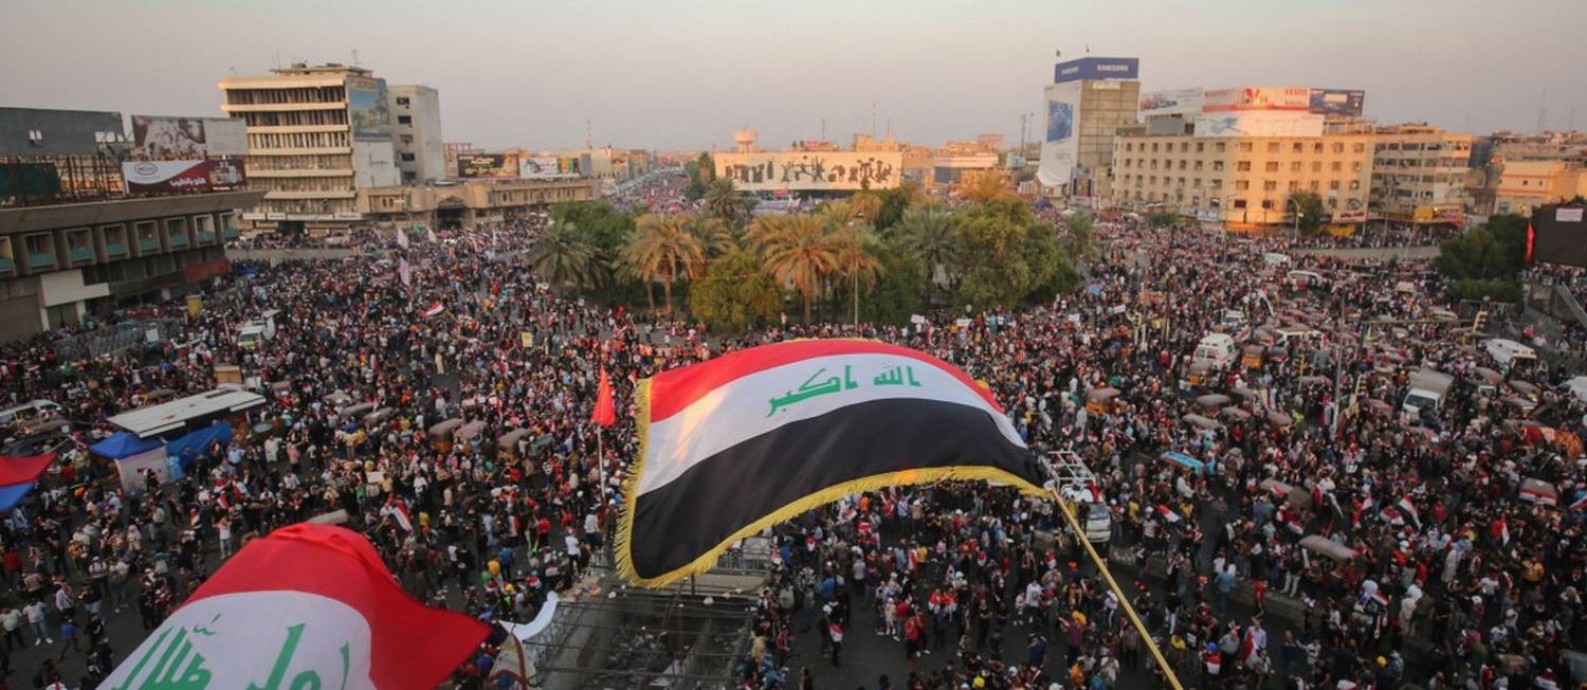 Manifestantes ocupam a praça Tahrir, no Egito, durante os protestos antigoverno Foto: AHMAD AL-RUBAYE / AFP/31-10-2019